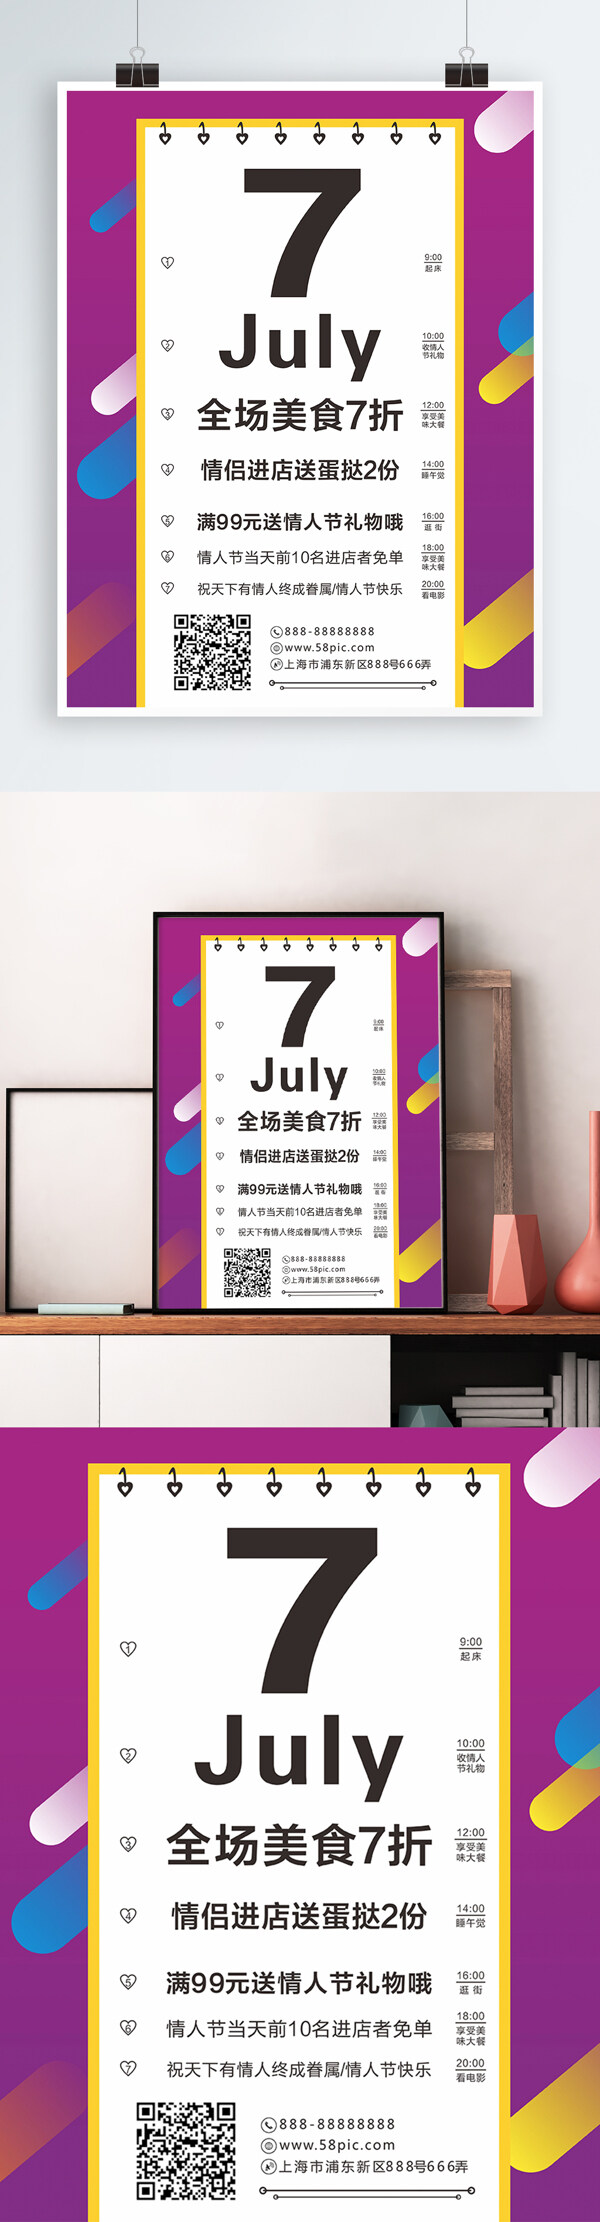 七夕节情人节视力表版式美食促销海报